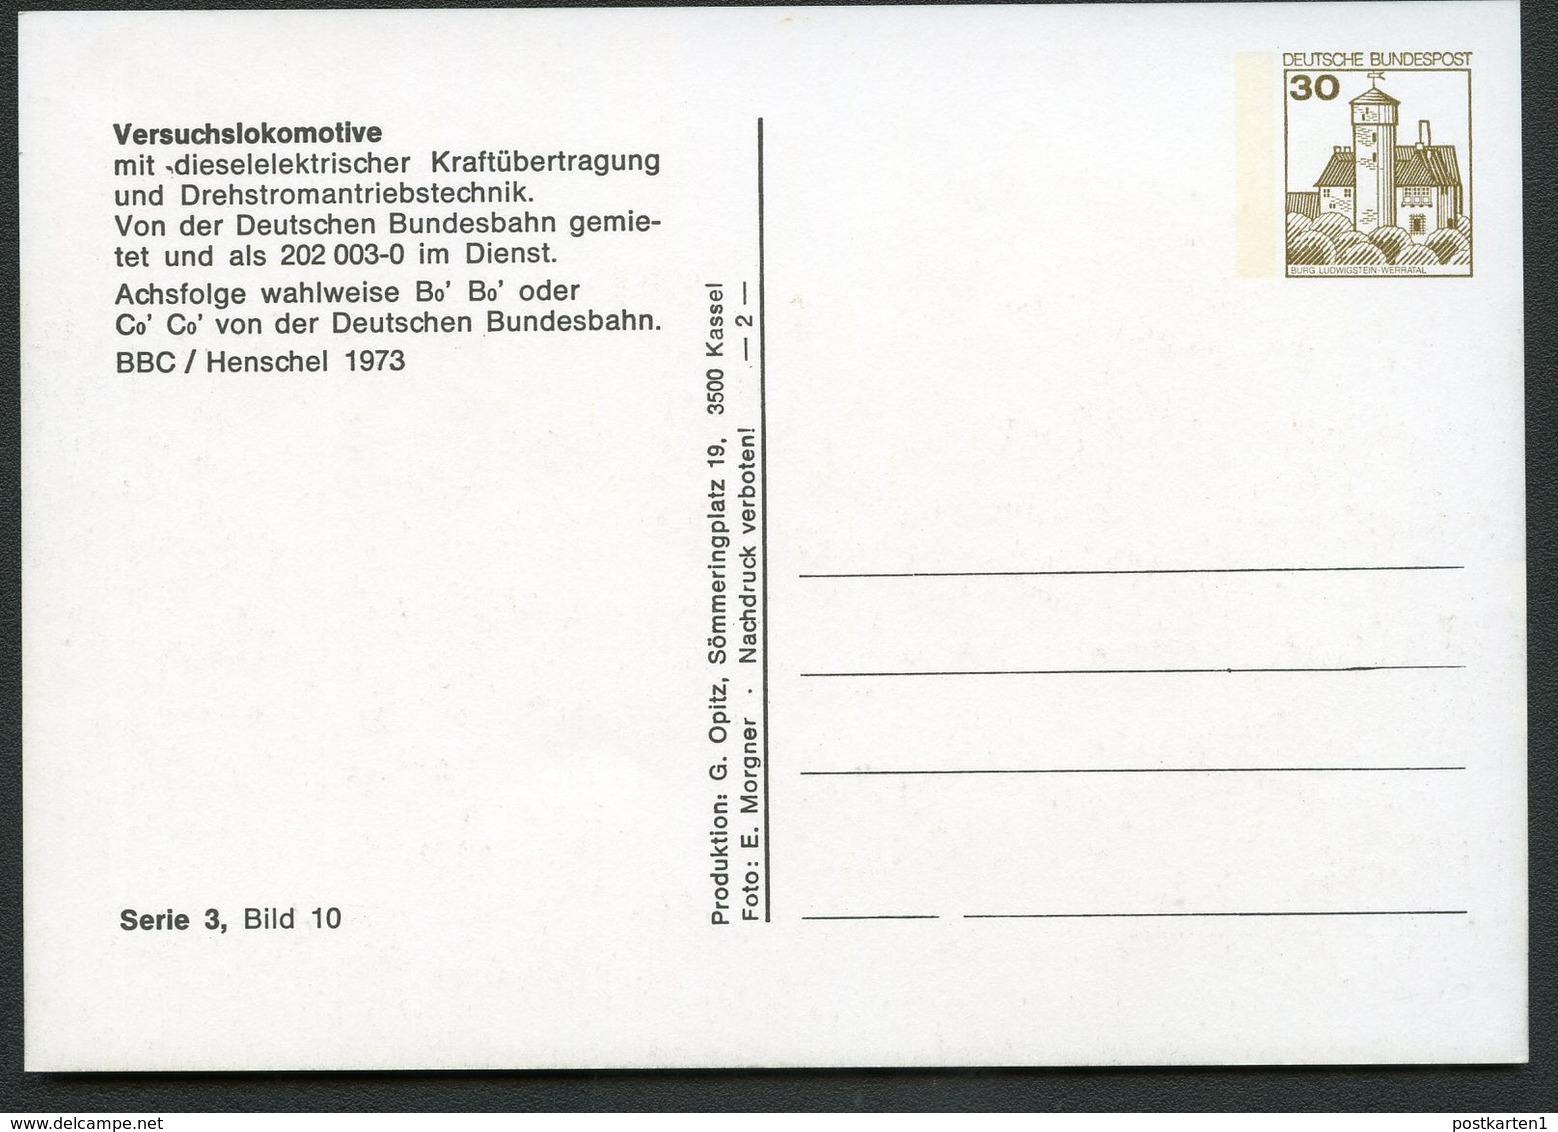 Bund PP98 B2/002 VERSUCHSLOKOMOTIVE 202003.0 Bietigheim-Bissingen 1981 NGK 5,00 € - Private Postcards - Mint